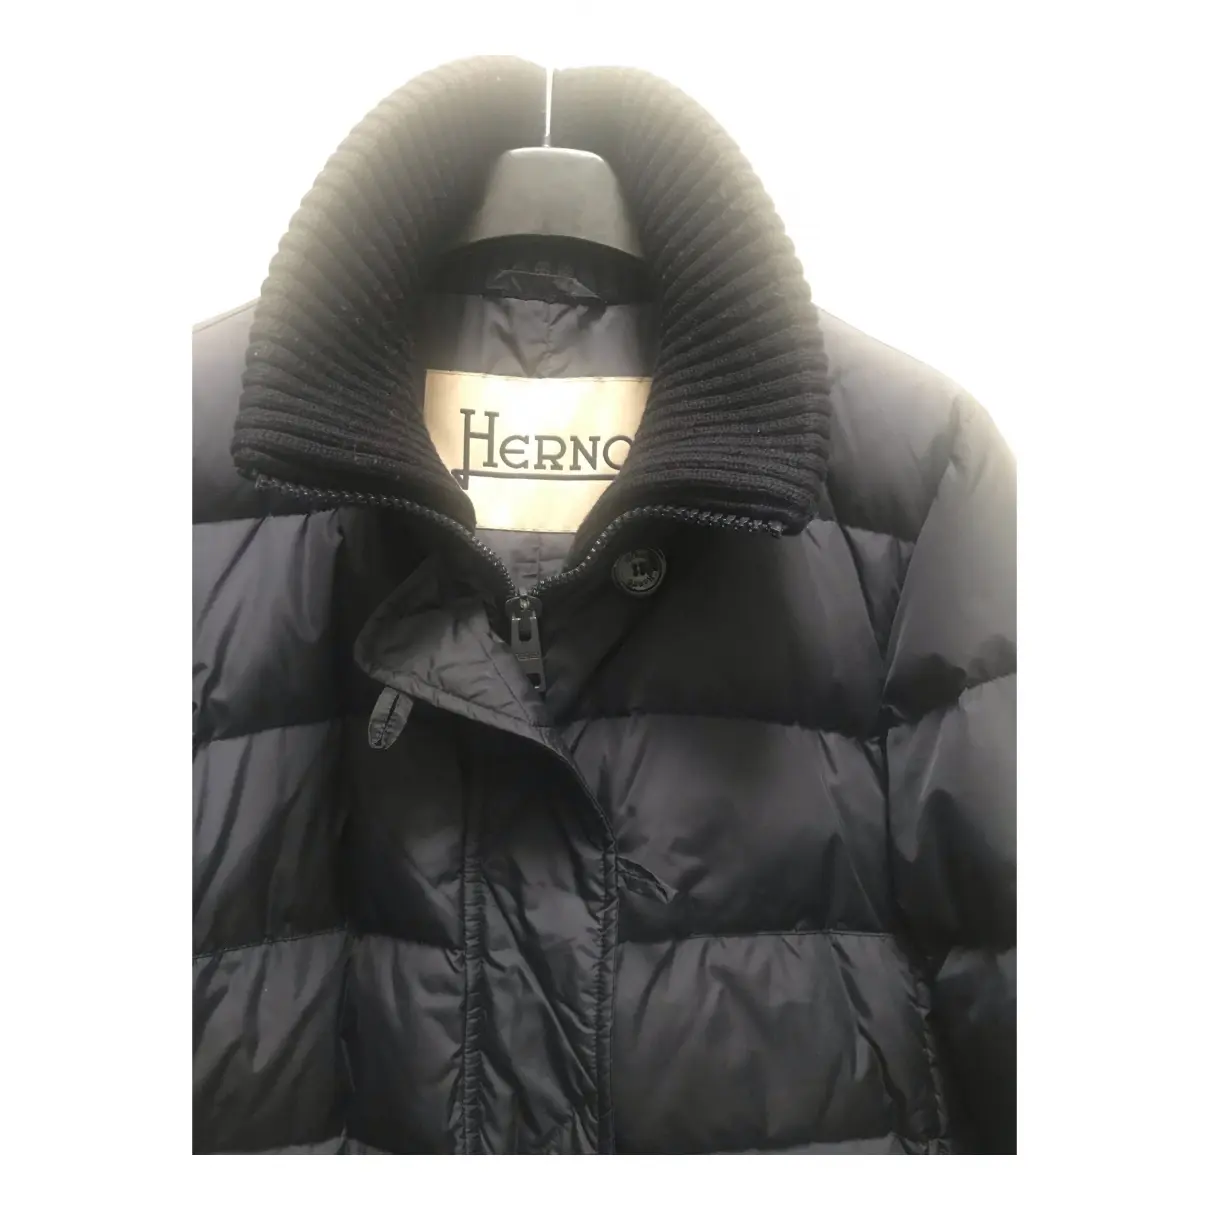 Buy Herno Coat online